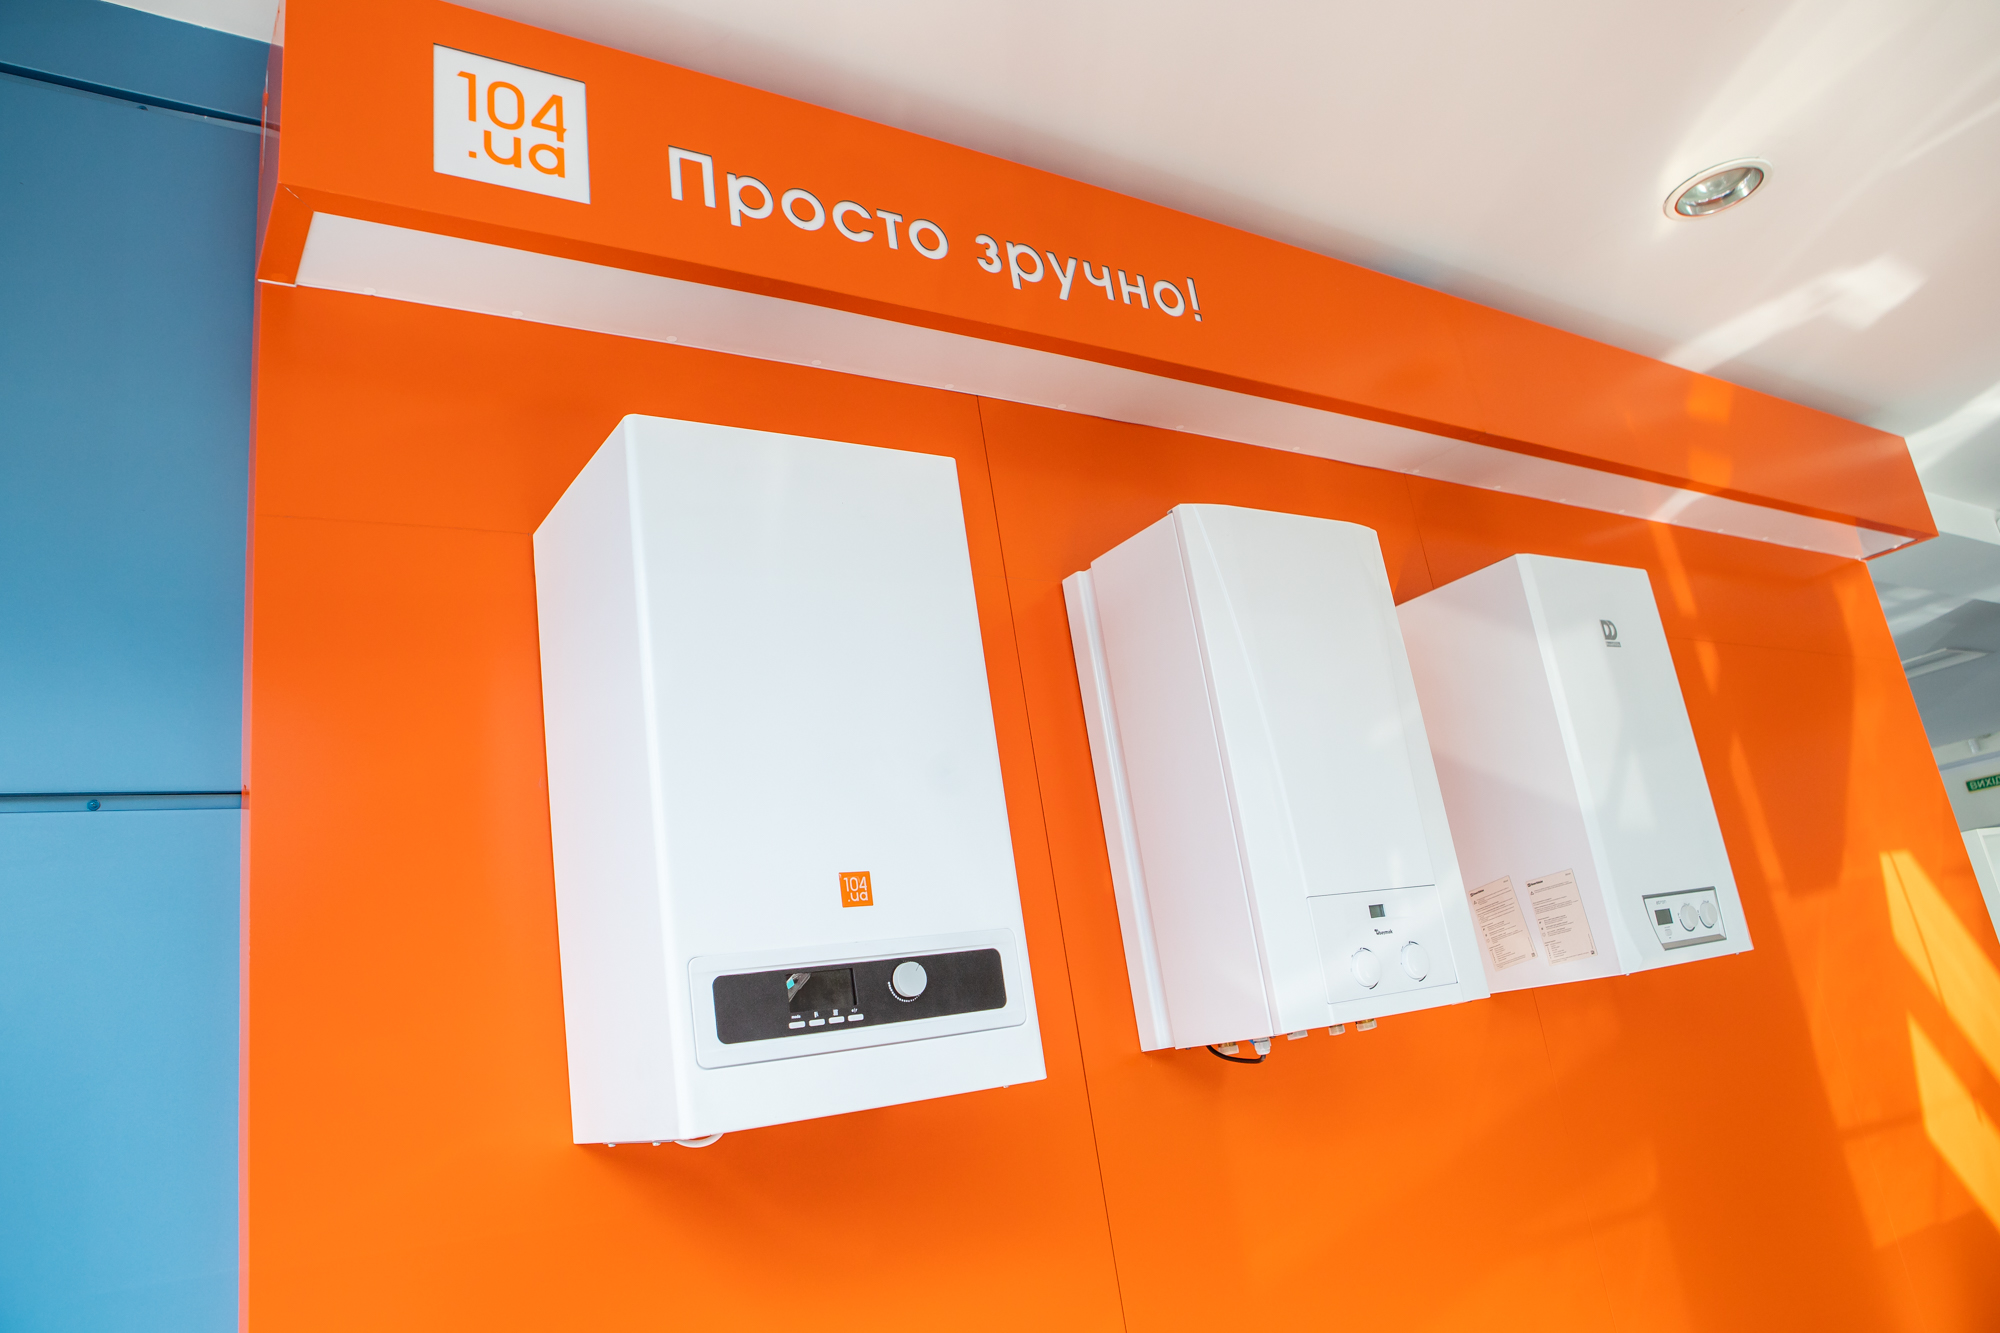 «Дніпрогаз» радить купувати енергоефективне газове обладнання через 104.ua клієнтський простір